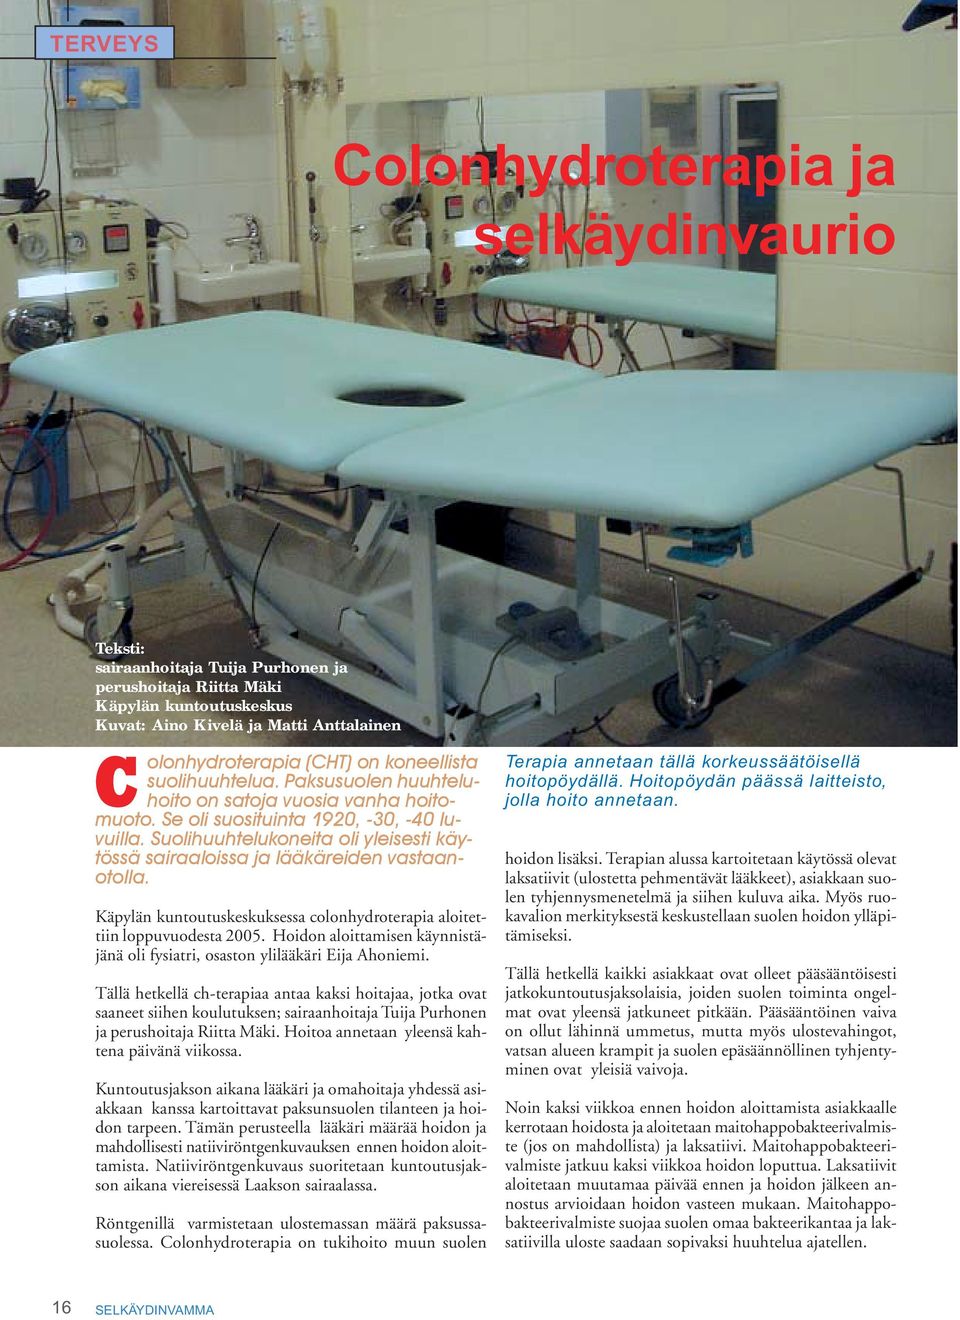 Suolihuuhtelukoneita oli yleisesti käytössä sairaaloissa ja lääkäreiden vastaanotolla. Käpylän kuntoutuskeskuksessa colonhydroterapia aloitettiin loppuvuodesta 2005.